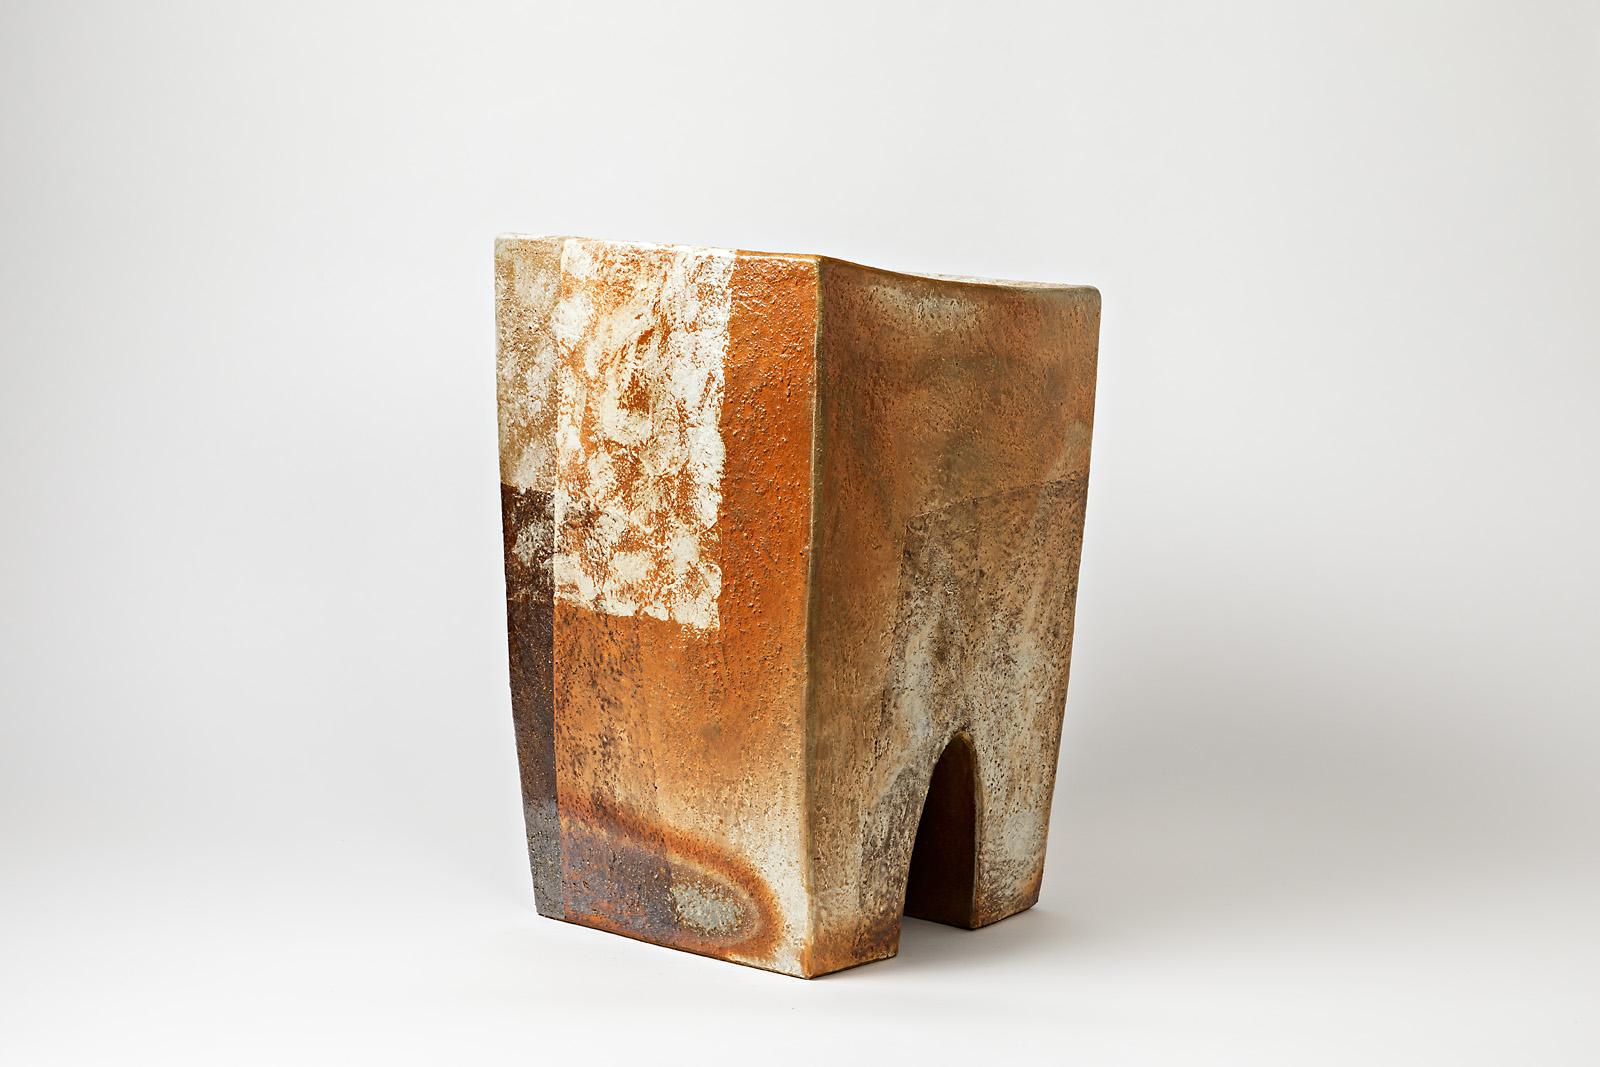 Ein Keramikhocker von Martin Goerg mit Glasurdekor.
Dieses Stück kann sowohl drinnen als auch draußen aufgestellt werden.
Perfekter Originalzustand.
2018.
Es ist ein Satz von 8 Stück erhältlich.